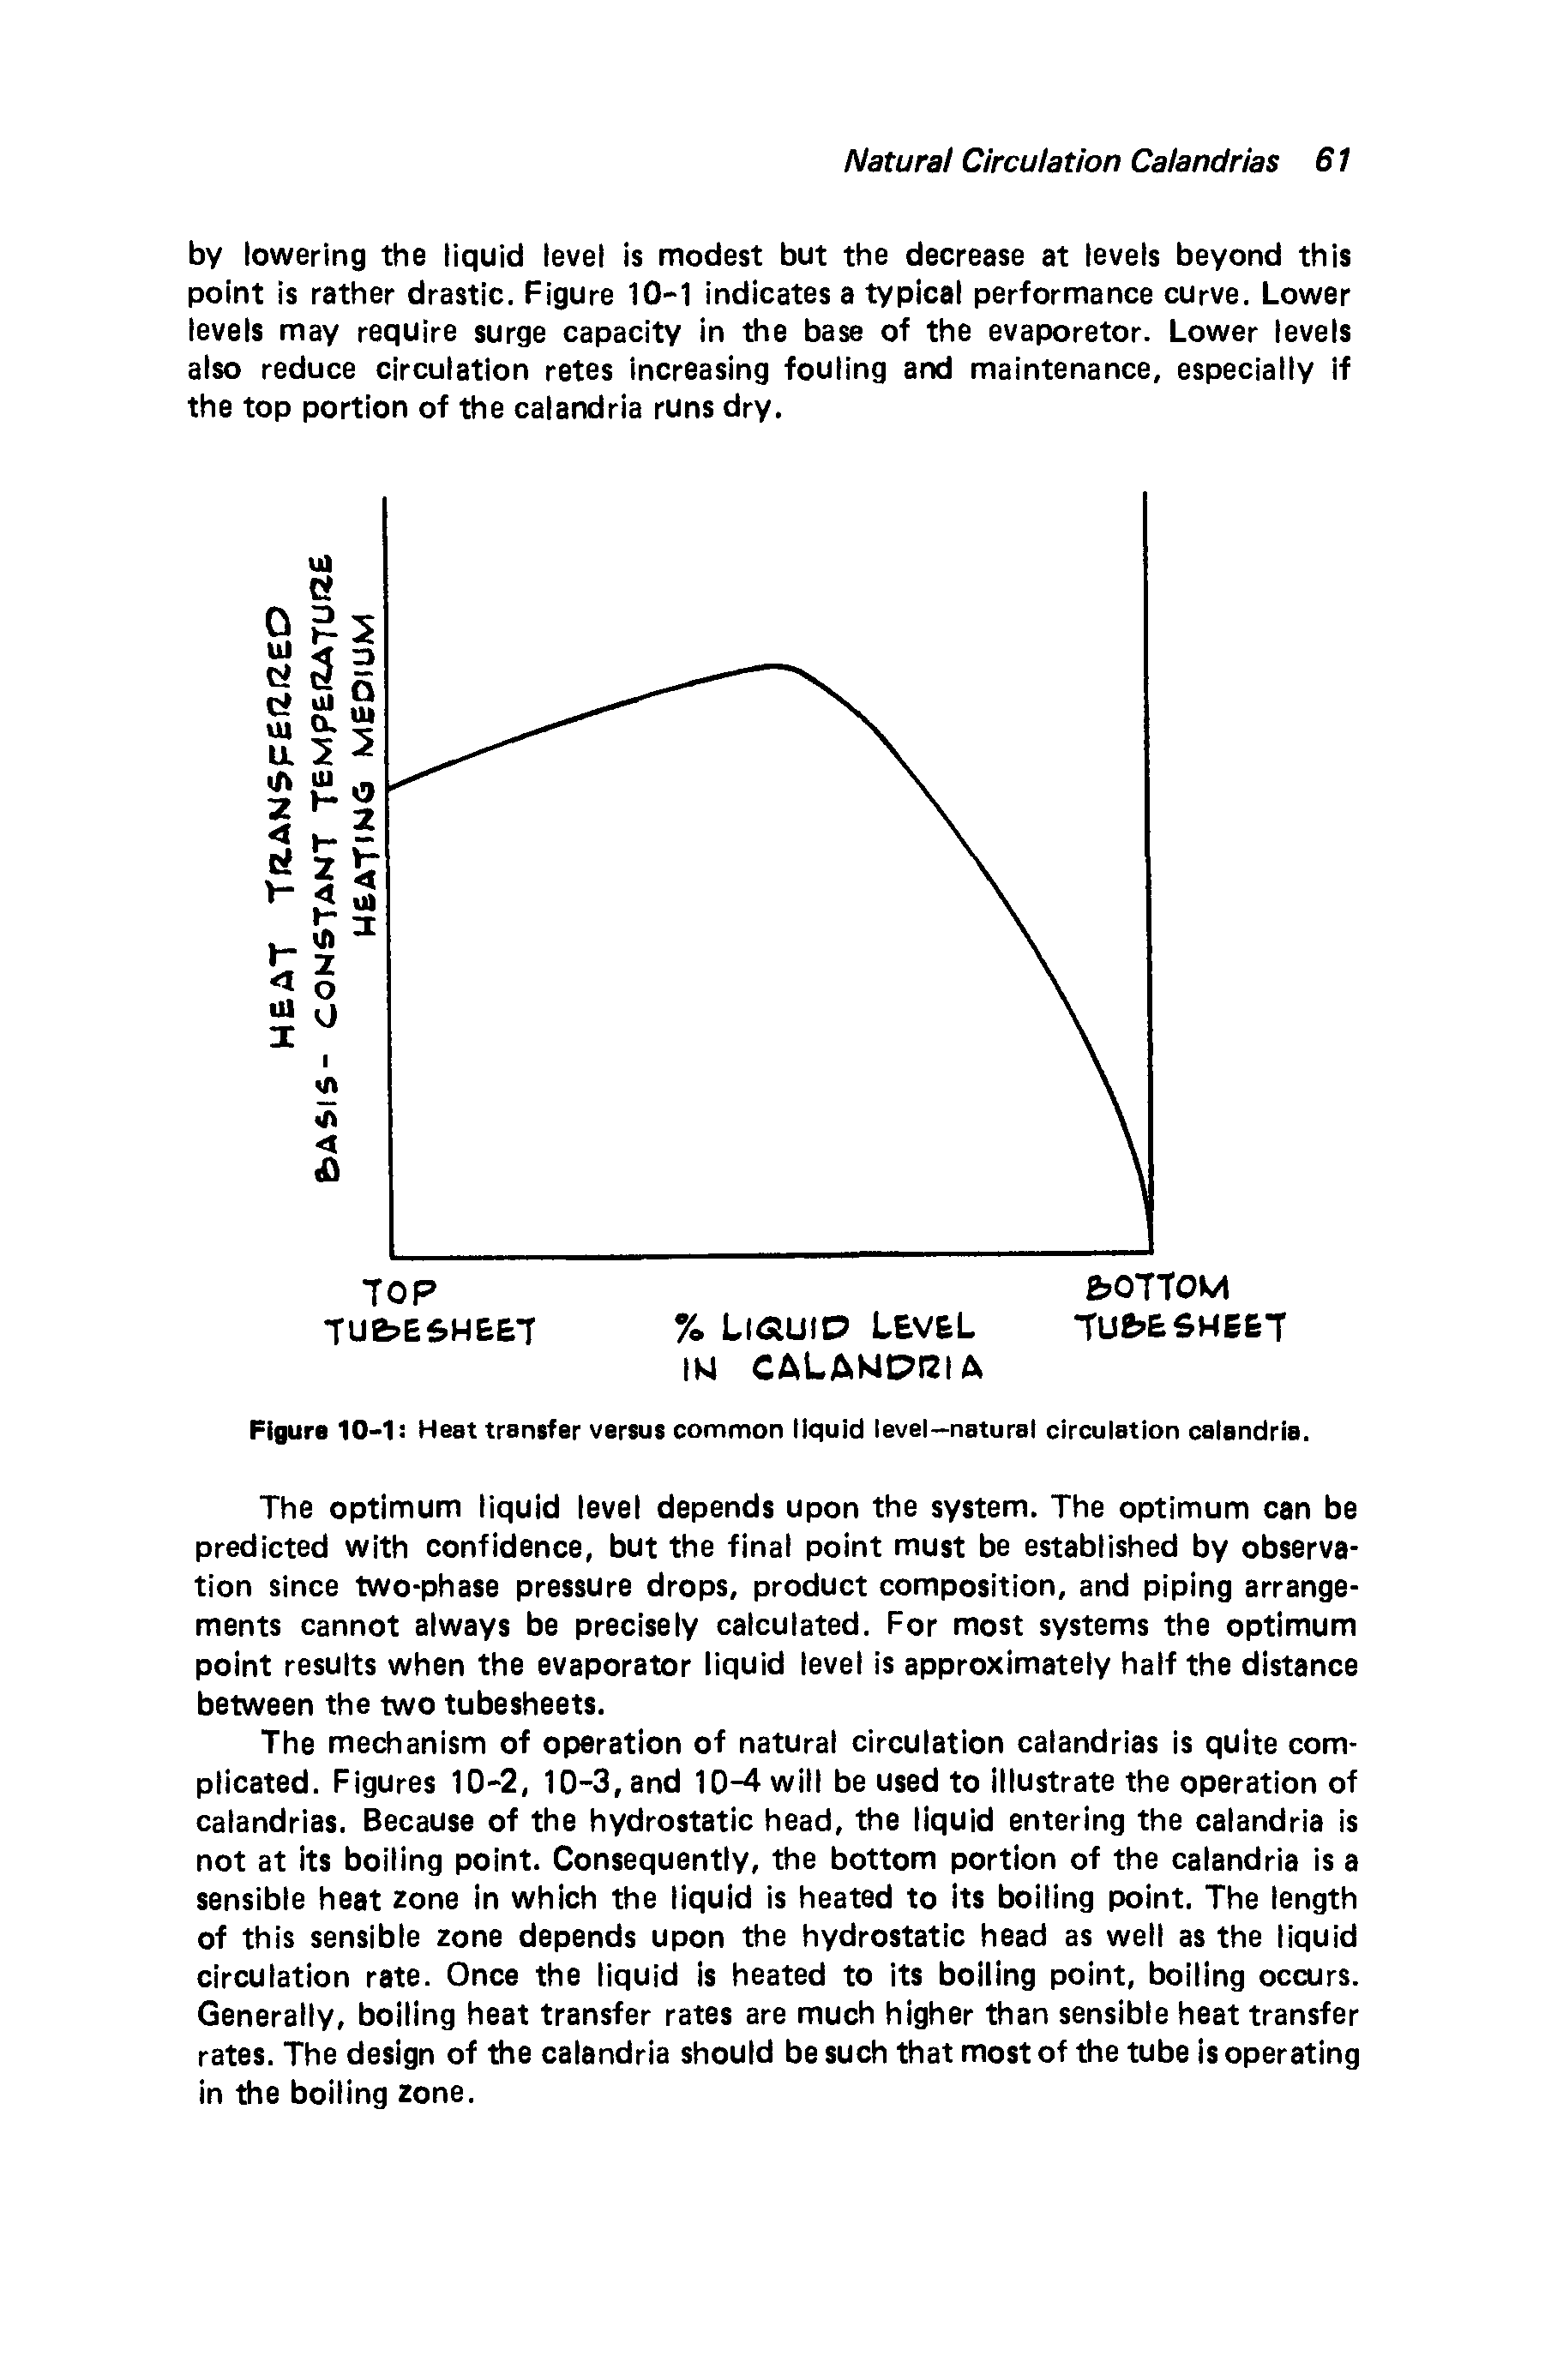 Figure 10-1 Heat transfer versus common liquid level-natural circulation calandria.